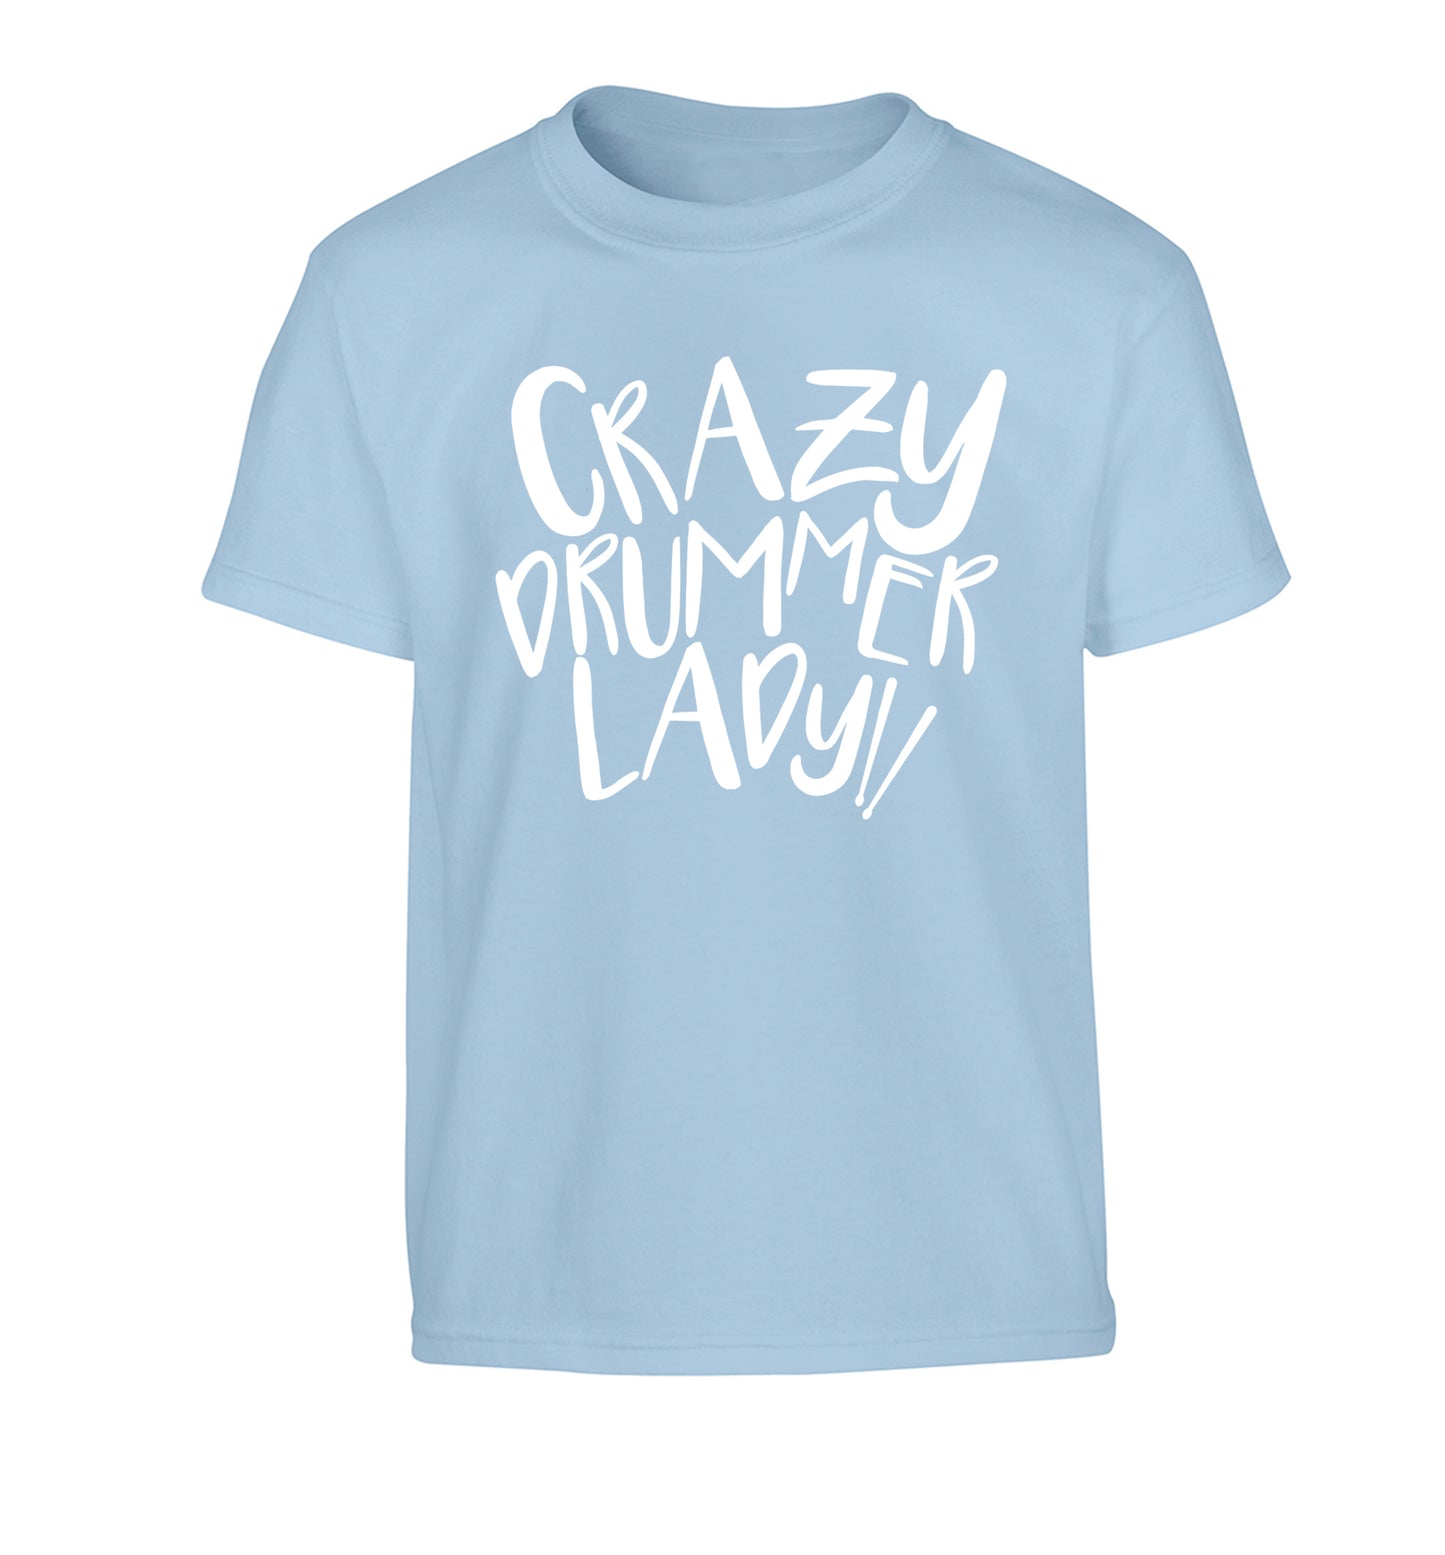 Crazy drummer lady Children's light blue Tshirt 12-14 Years